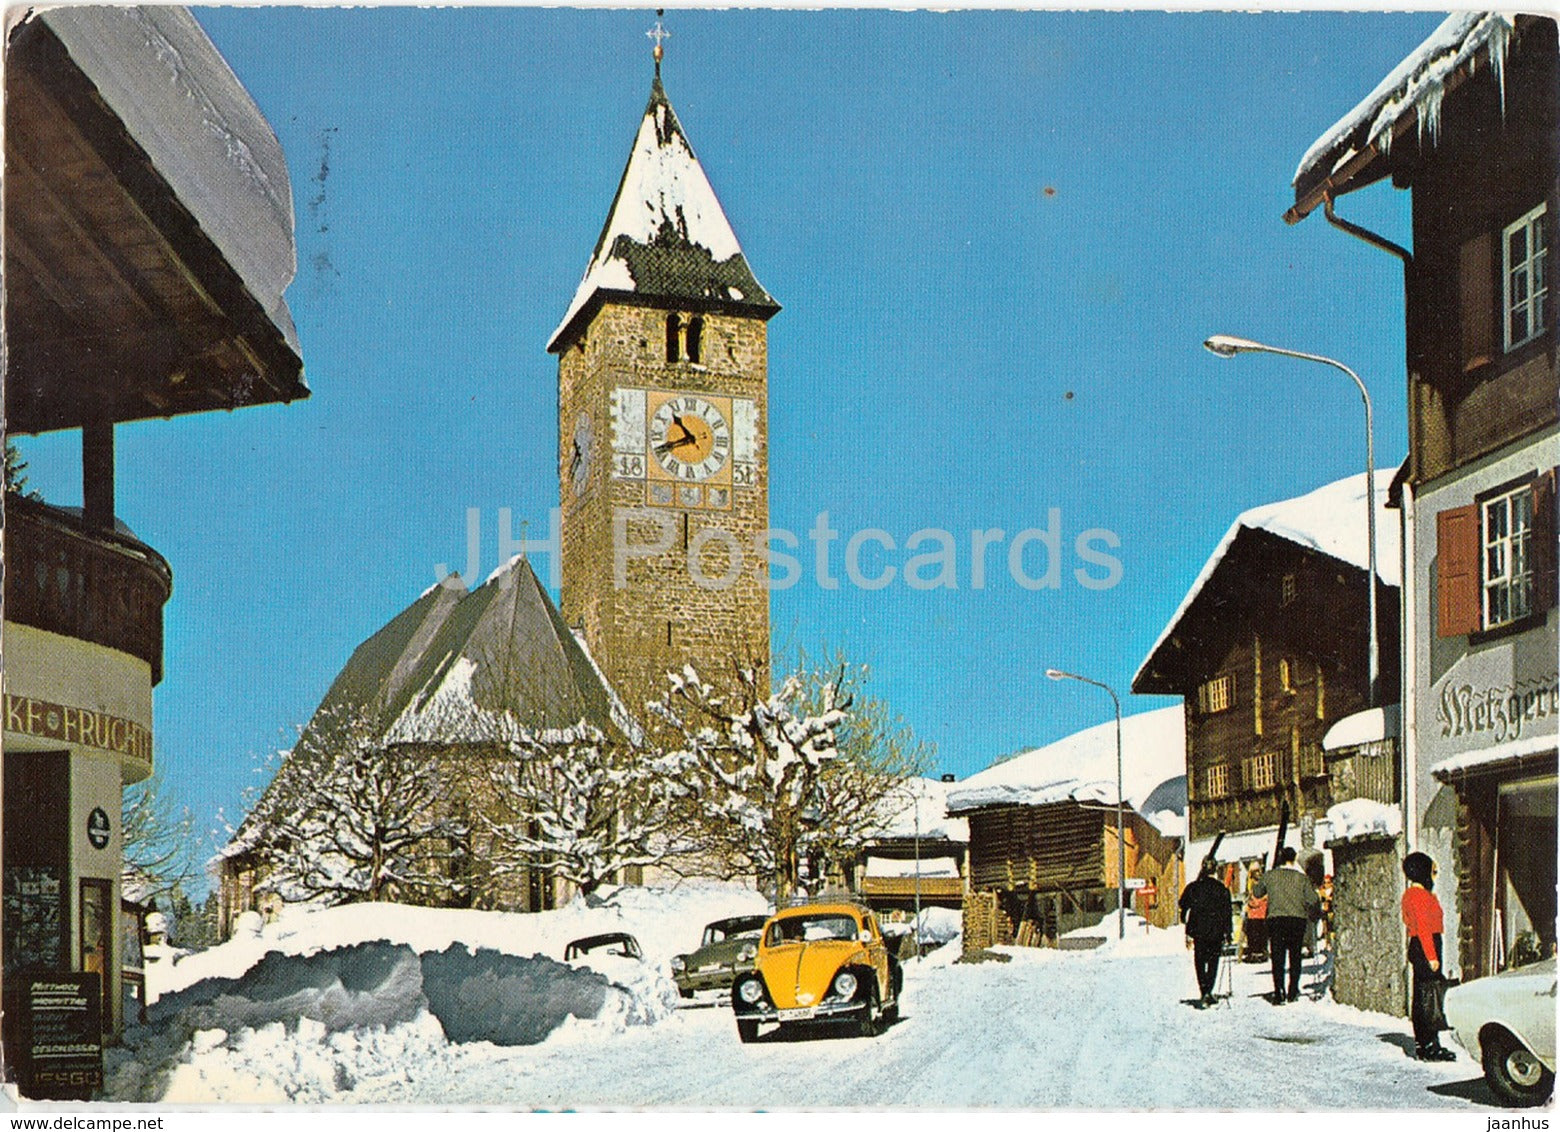 Klosters 1200 m - Dorfpartie bei der Ref Kirche - car Volkswagen - 1969 - Switzerland - used - JH Postcards